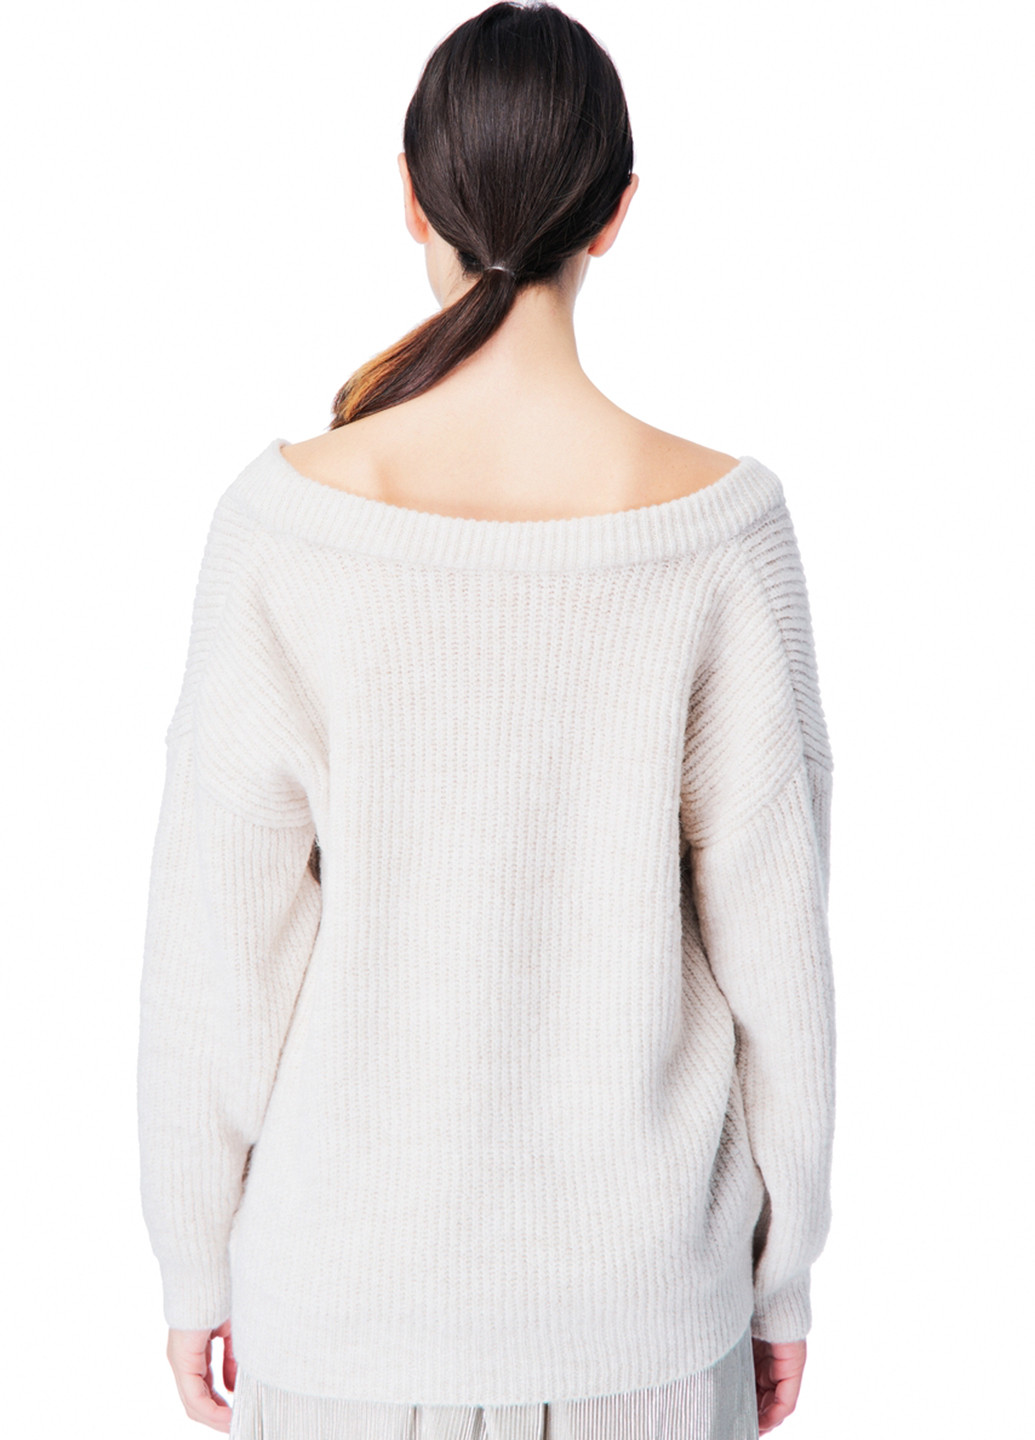 Молочный демисезонный пуловер пуловер SVTR